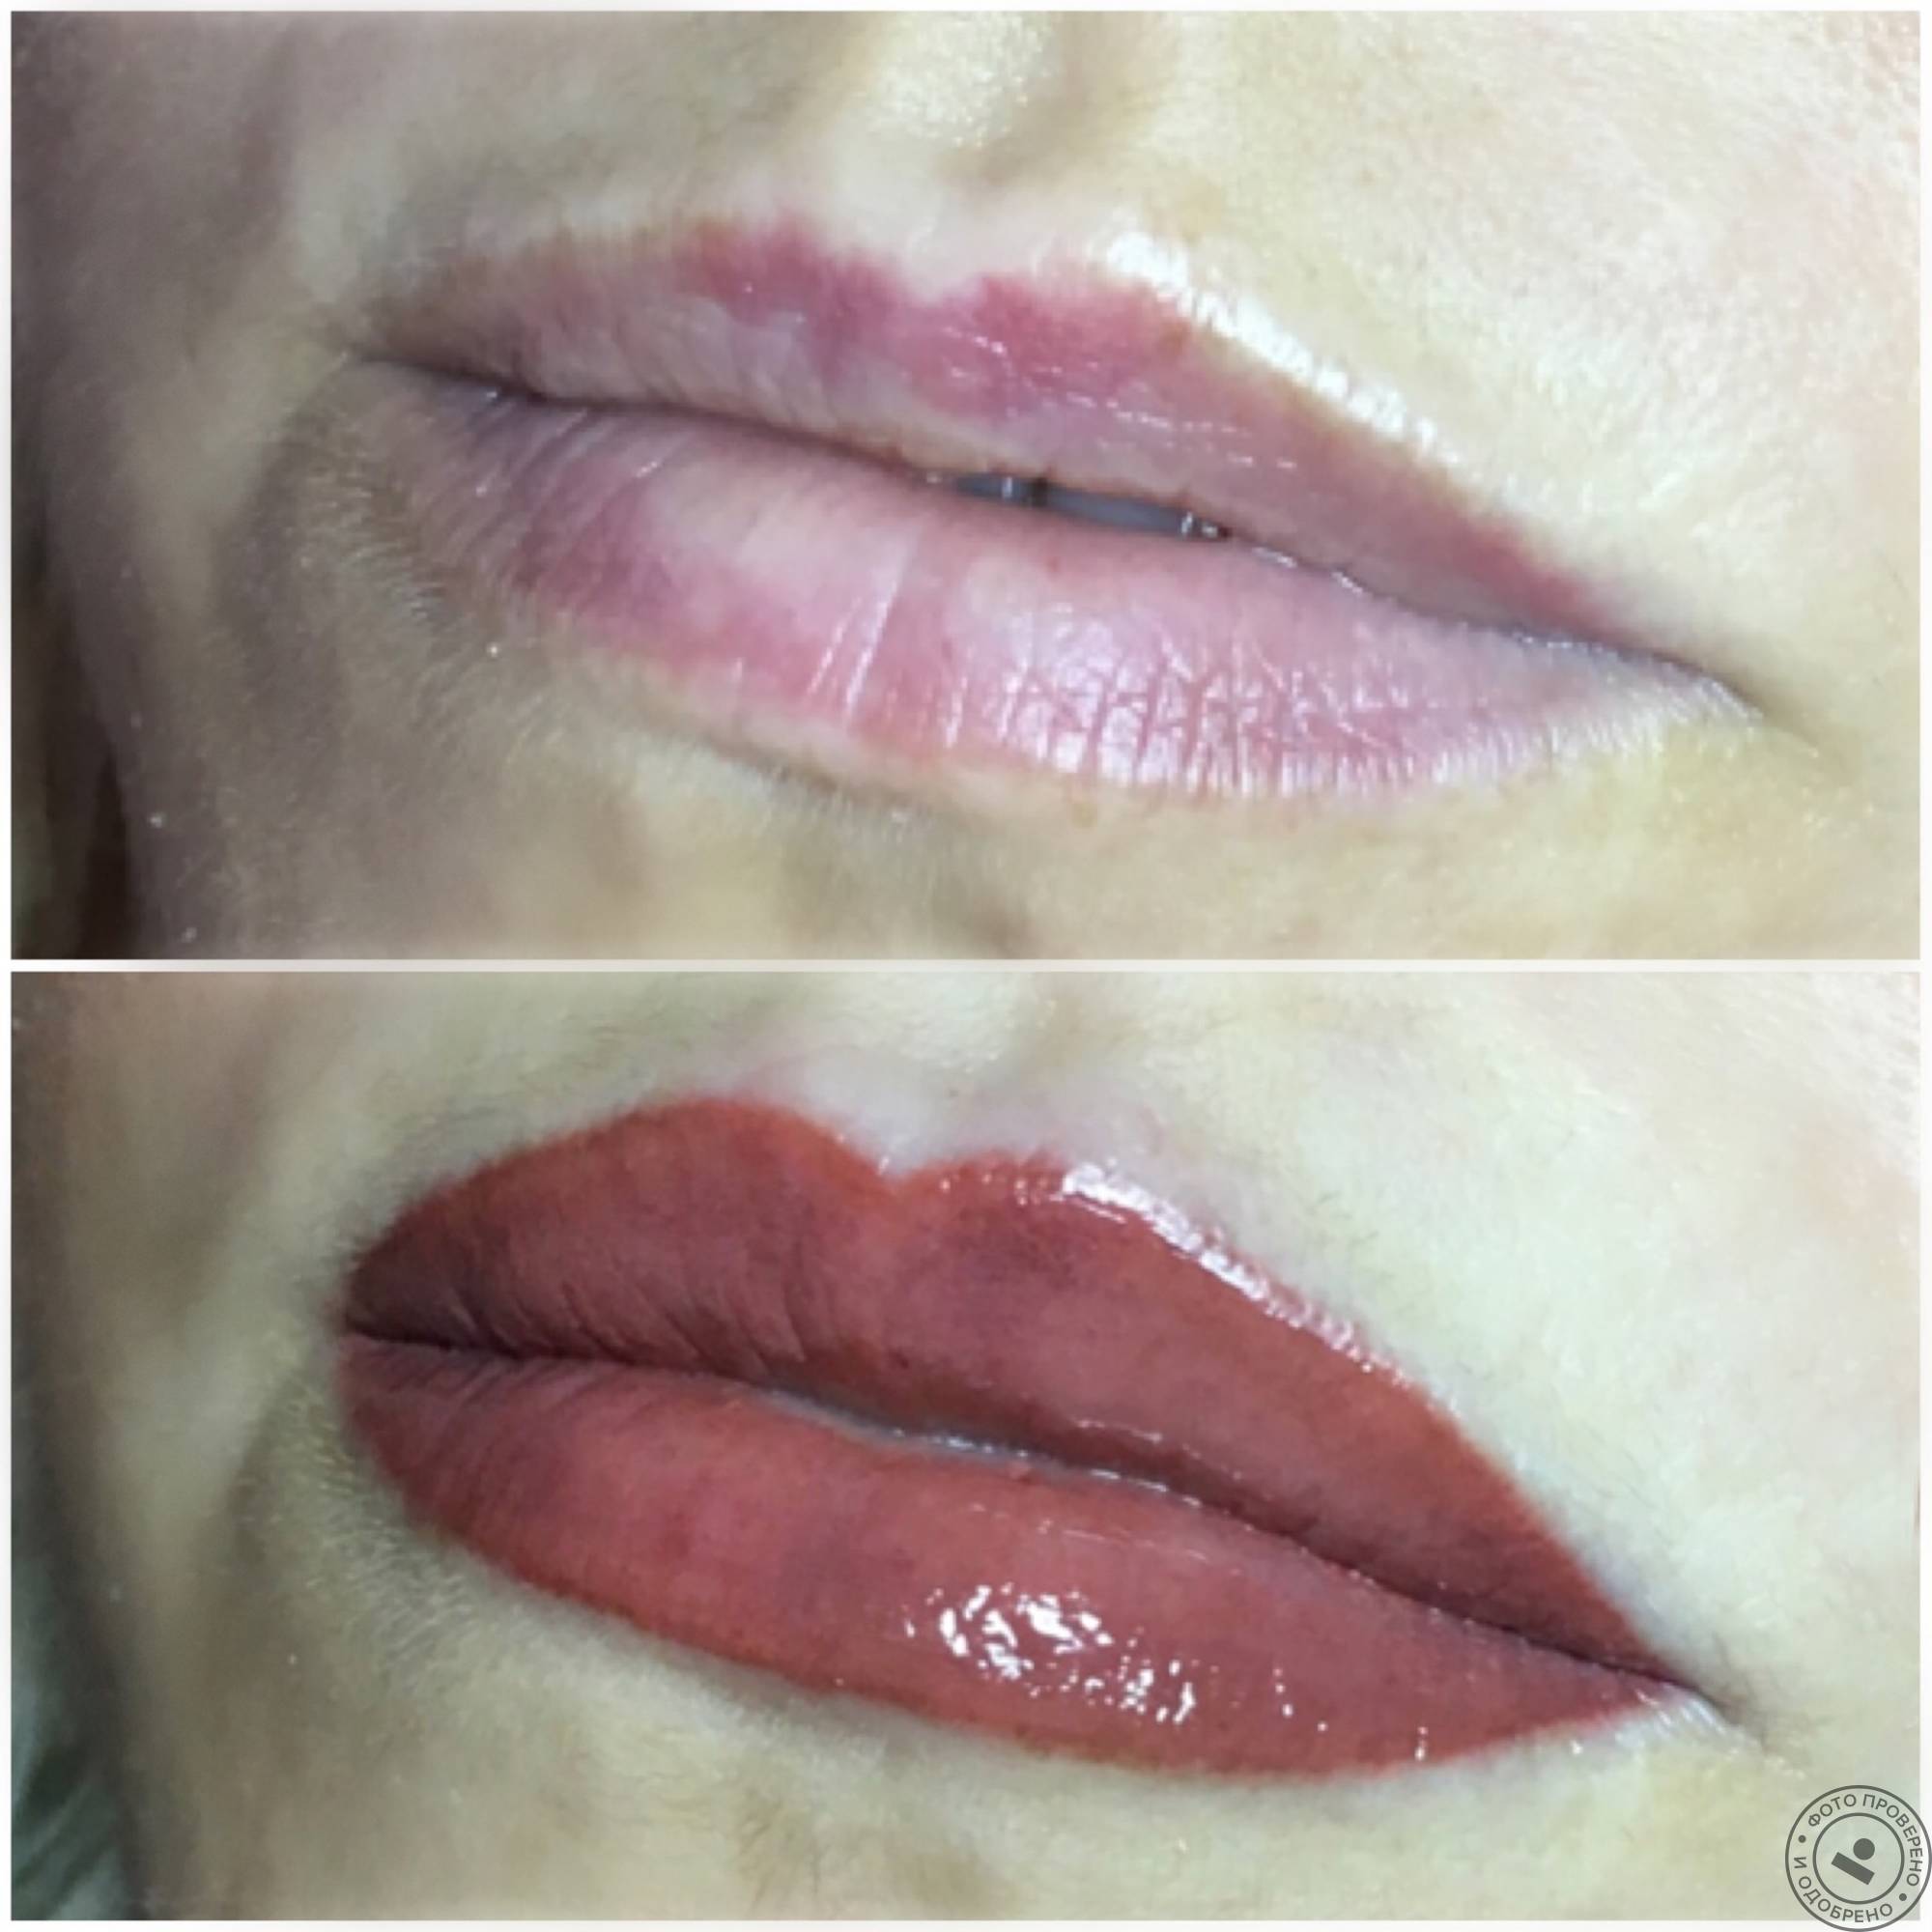 Татуаж контура губ – как выглядит перманентный макияж в контурной технике